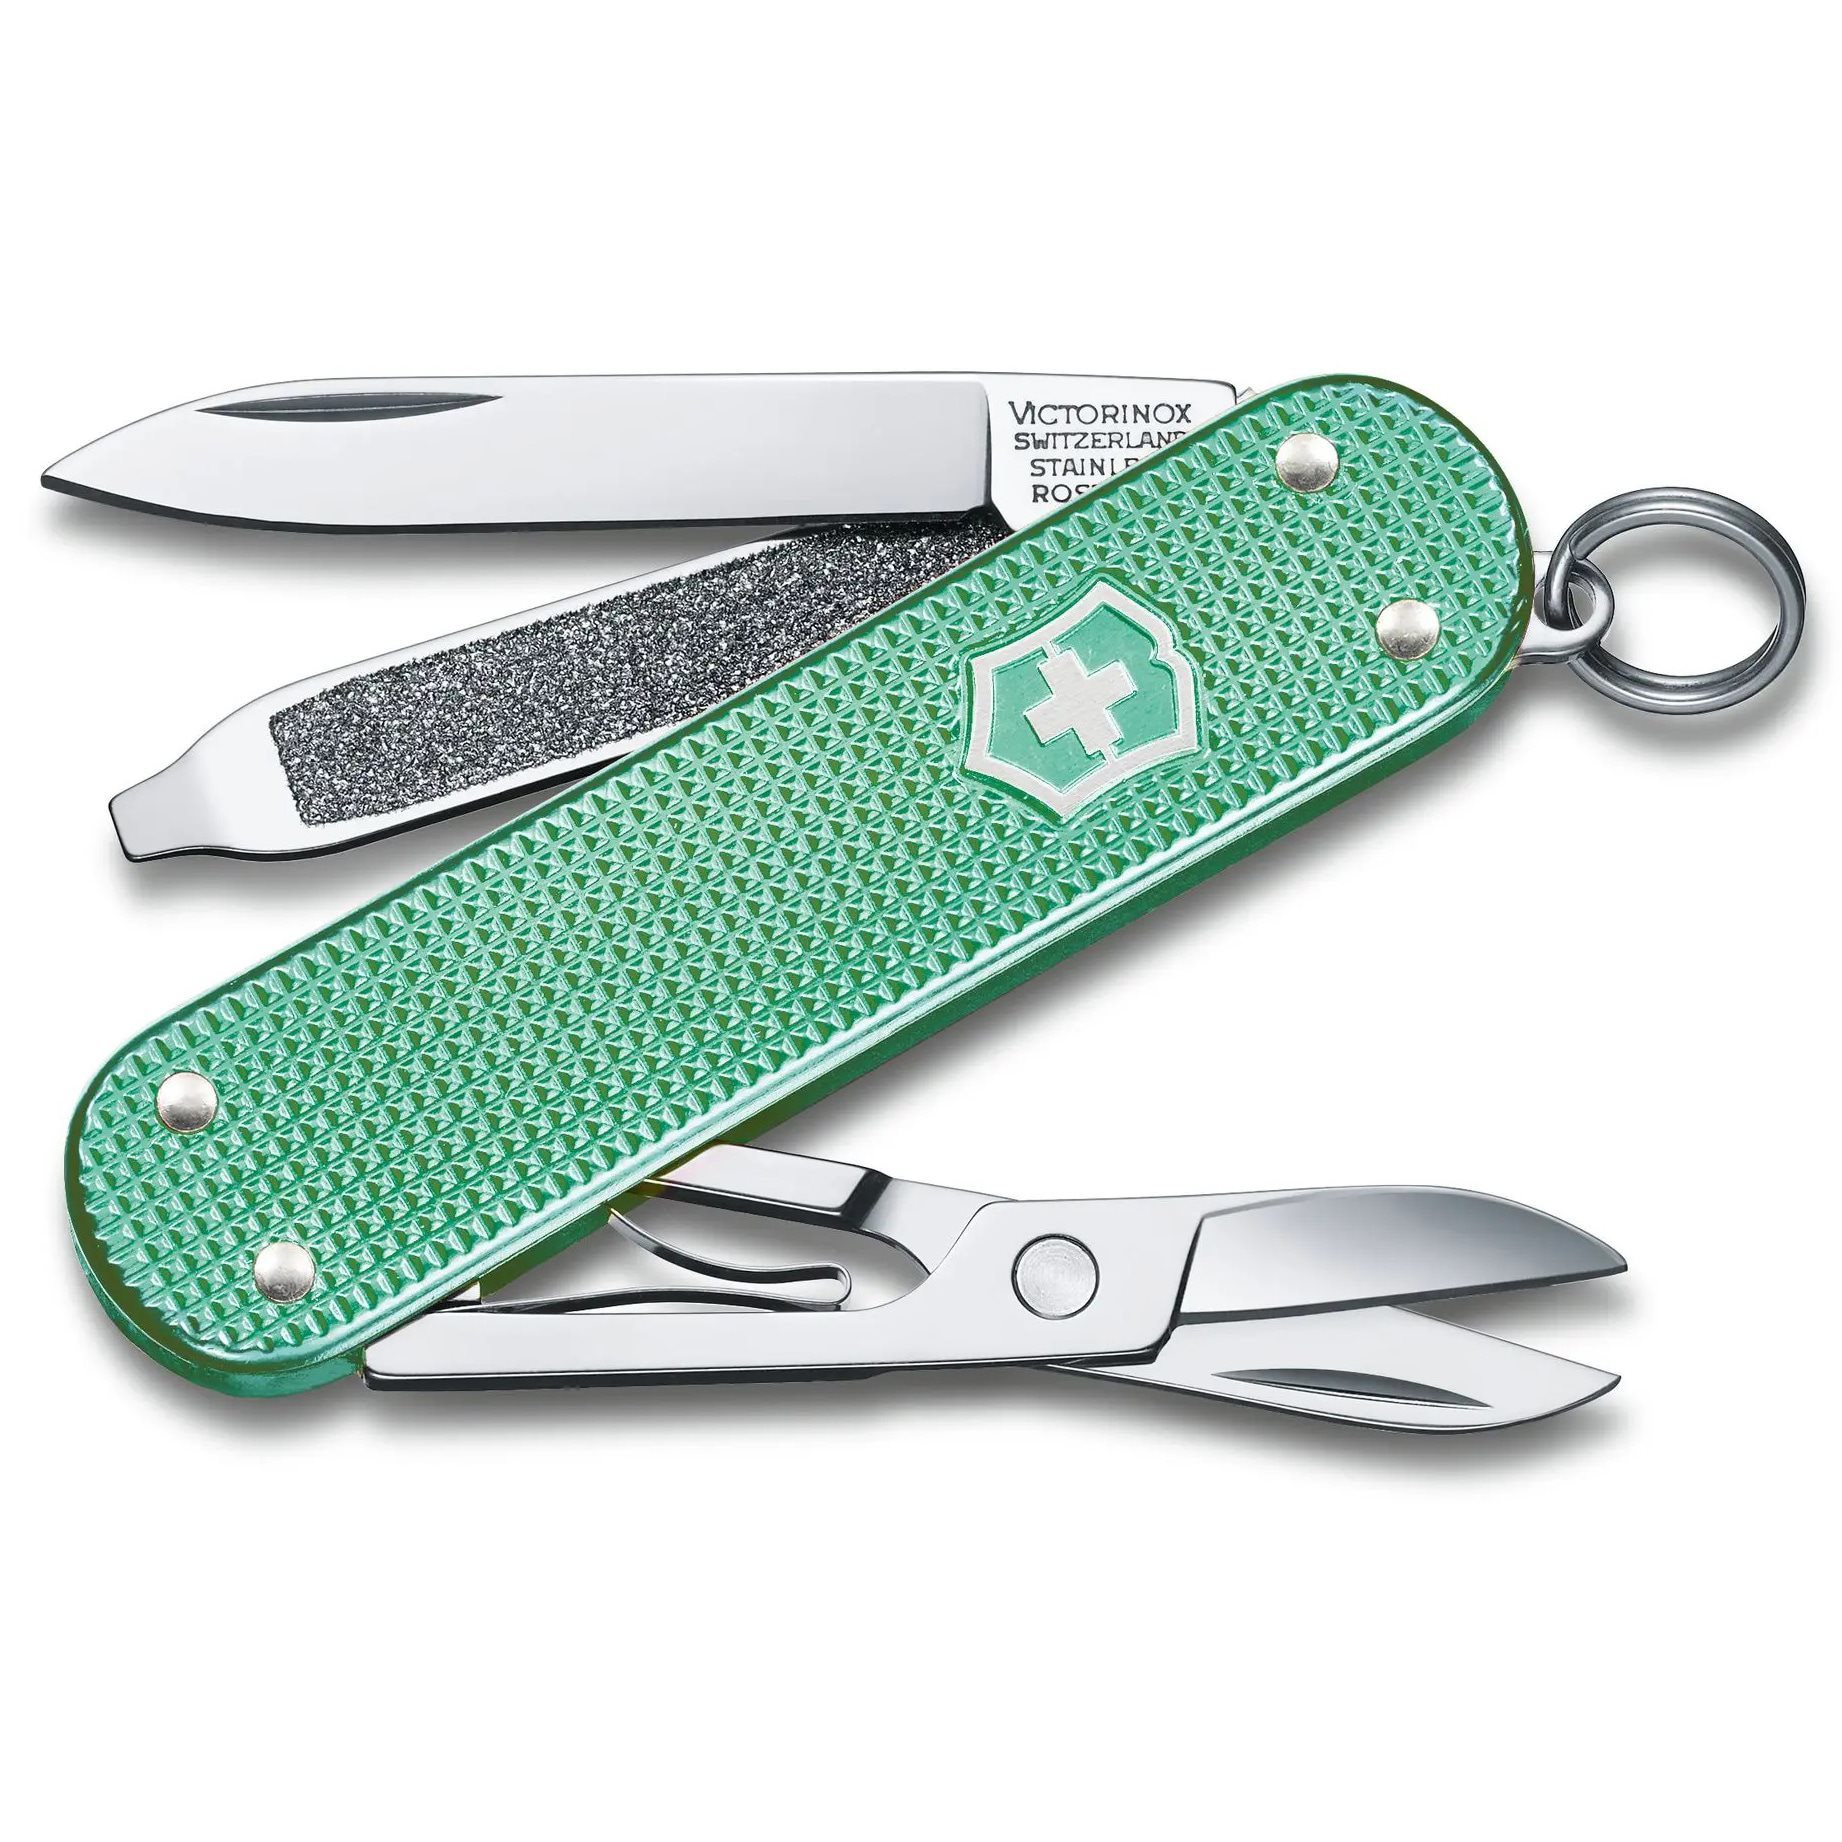 Pocket Knife CLASSIC SD ALOX MINTY MINT VICTORINOX 0.6221.221G L-11